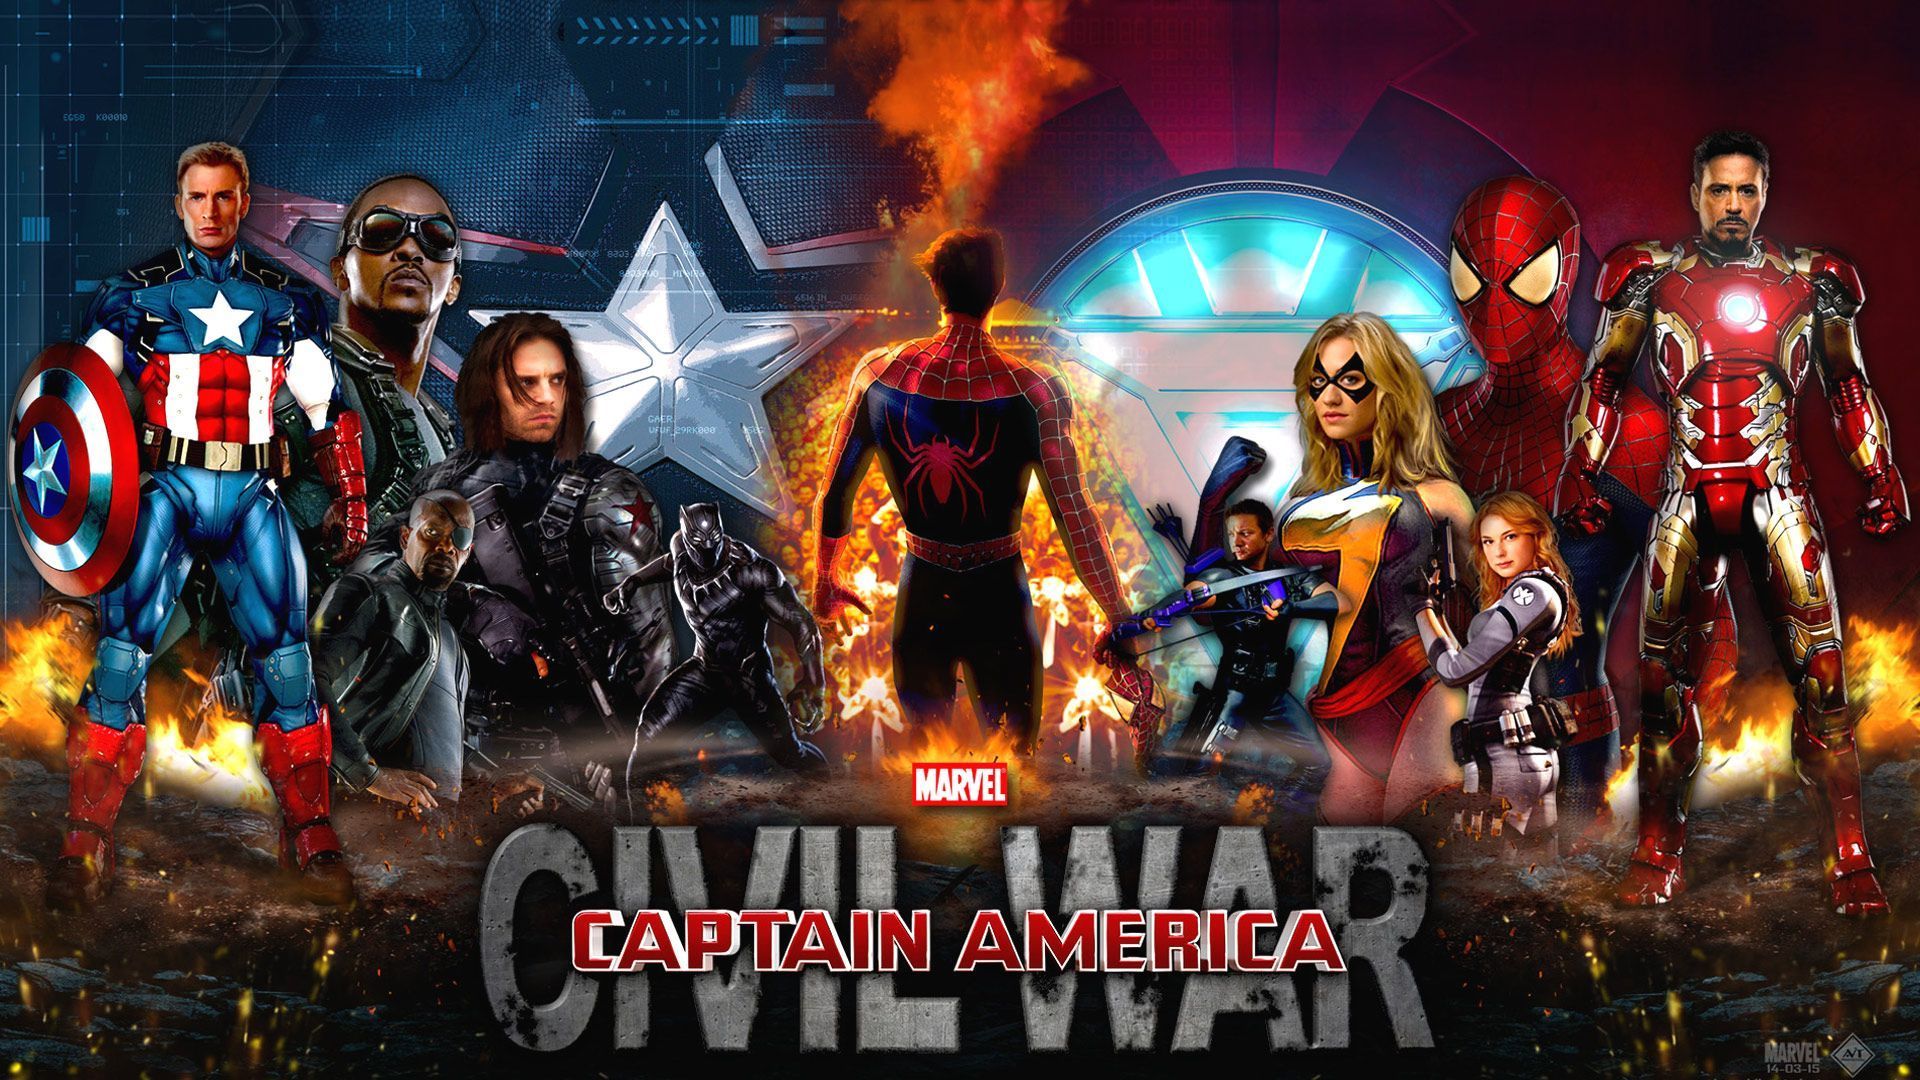 Captain America Civil War wallpaper Free full hd wallpapers for